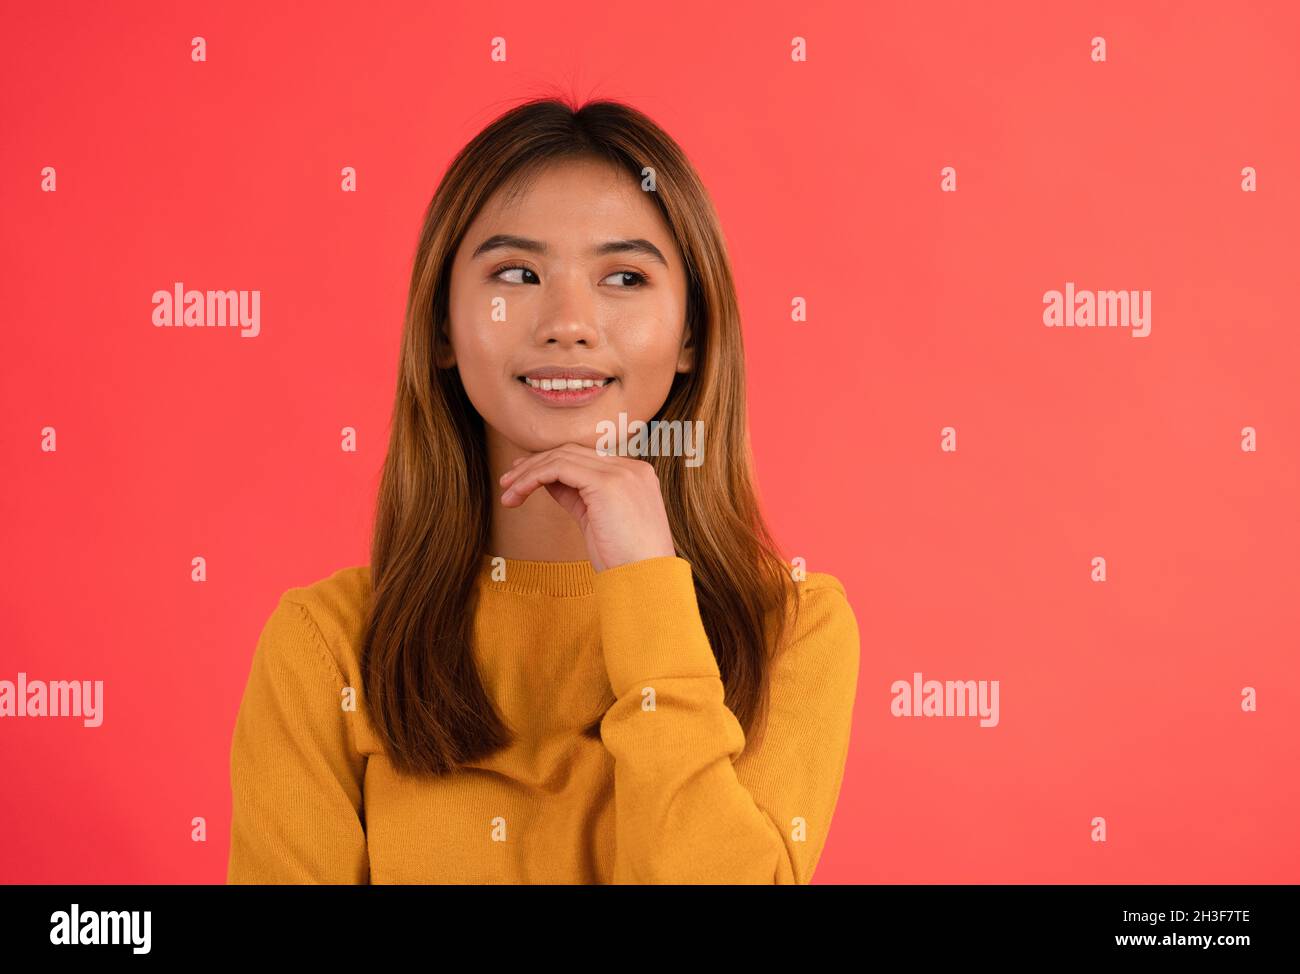 Retrato de joven atractiva chica asiática sonriendo mientras piensa con las manos en la barbilla Foto de stock